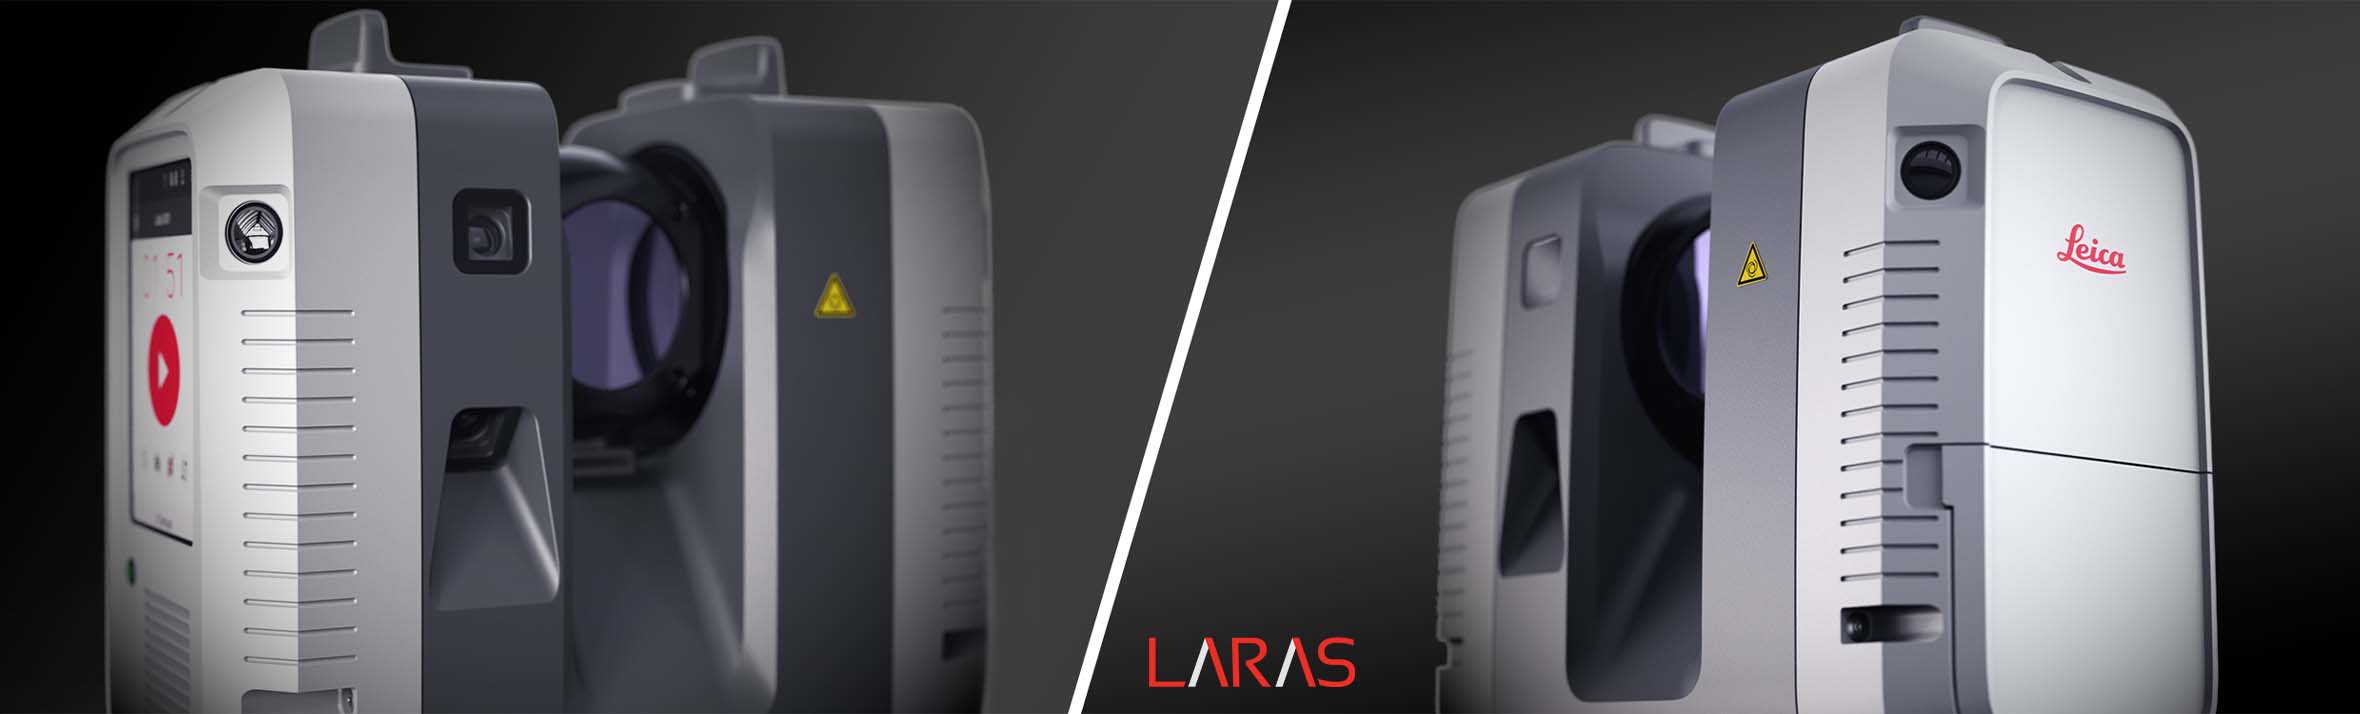 leica rtc360 en hızlı yersel lazer tarayıcı